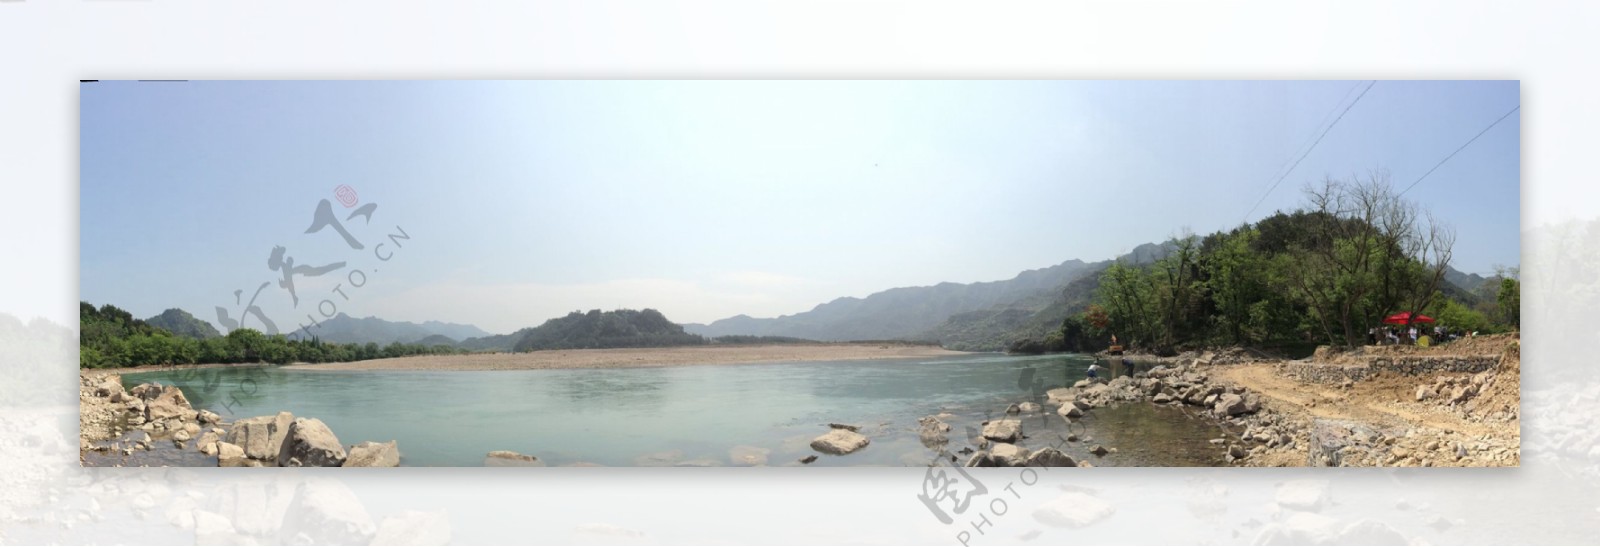 南溪江风景区图片